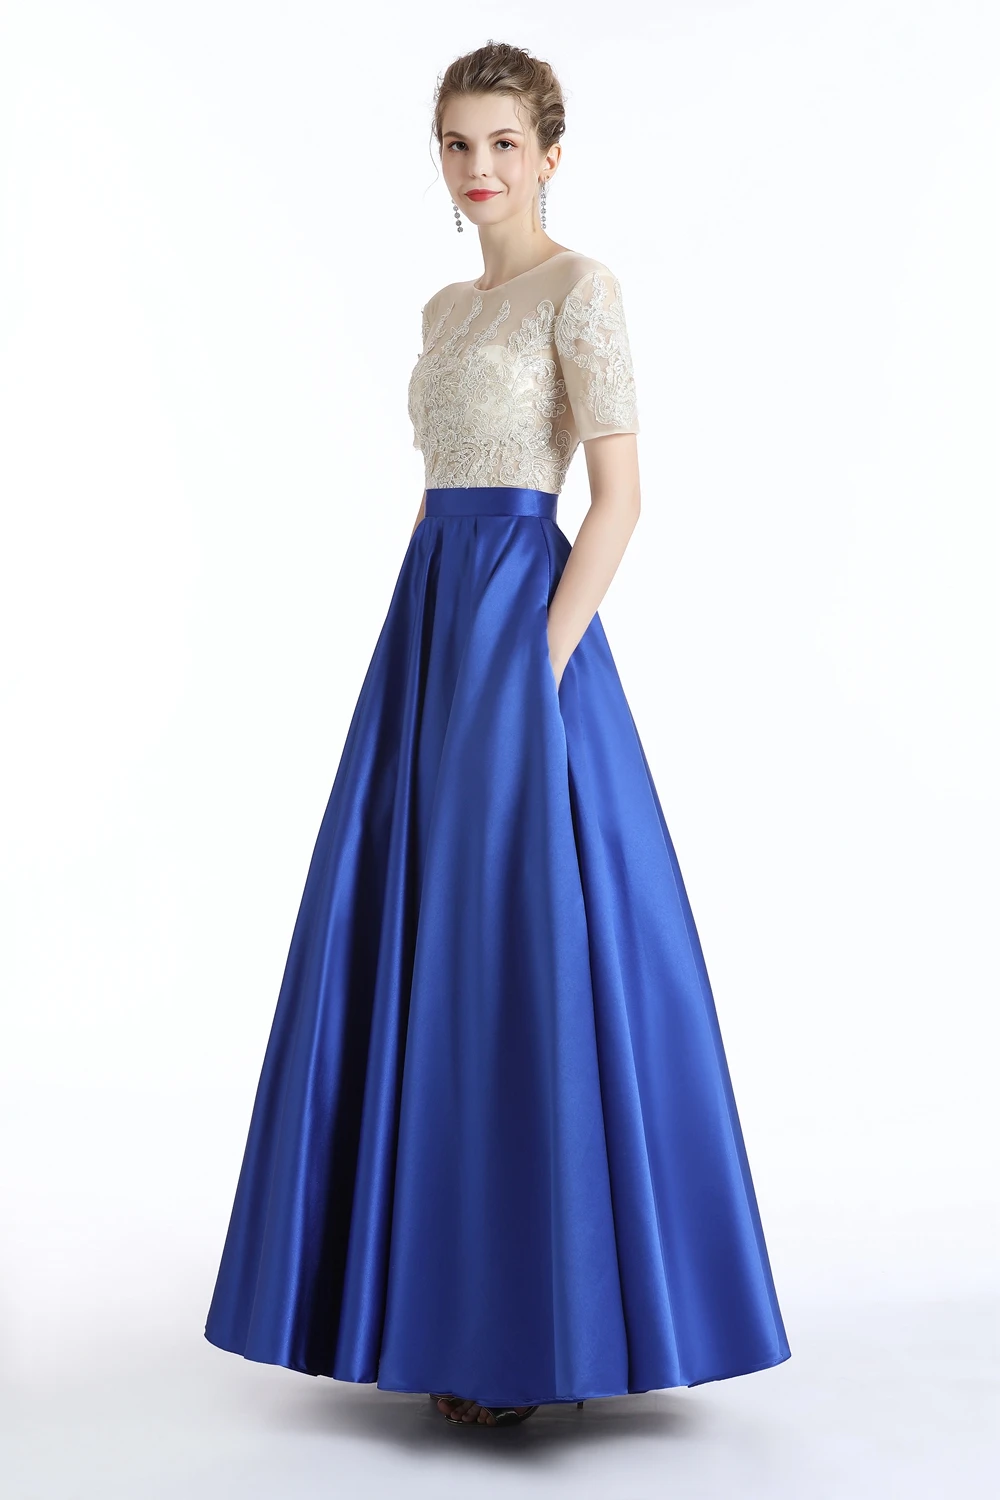 Распродажа вечернее платье, для банкета элегантность Синий Атлас с короткими рукавами Аппликации А-силуэт Выпускной вечернее платье блестящее платье